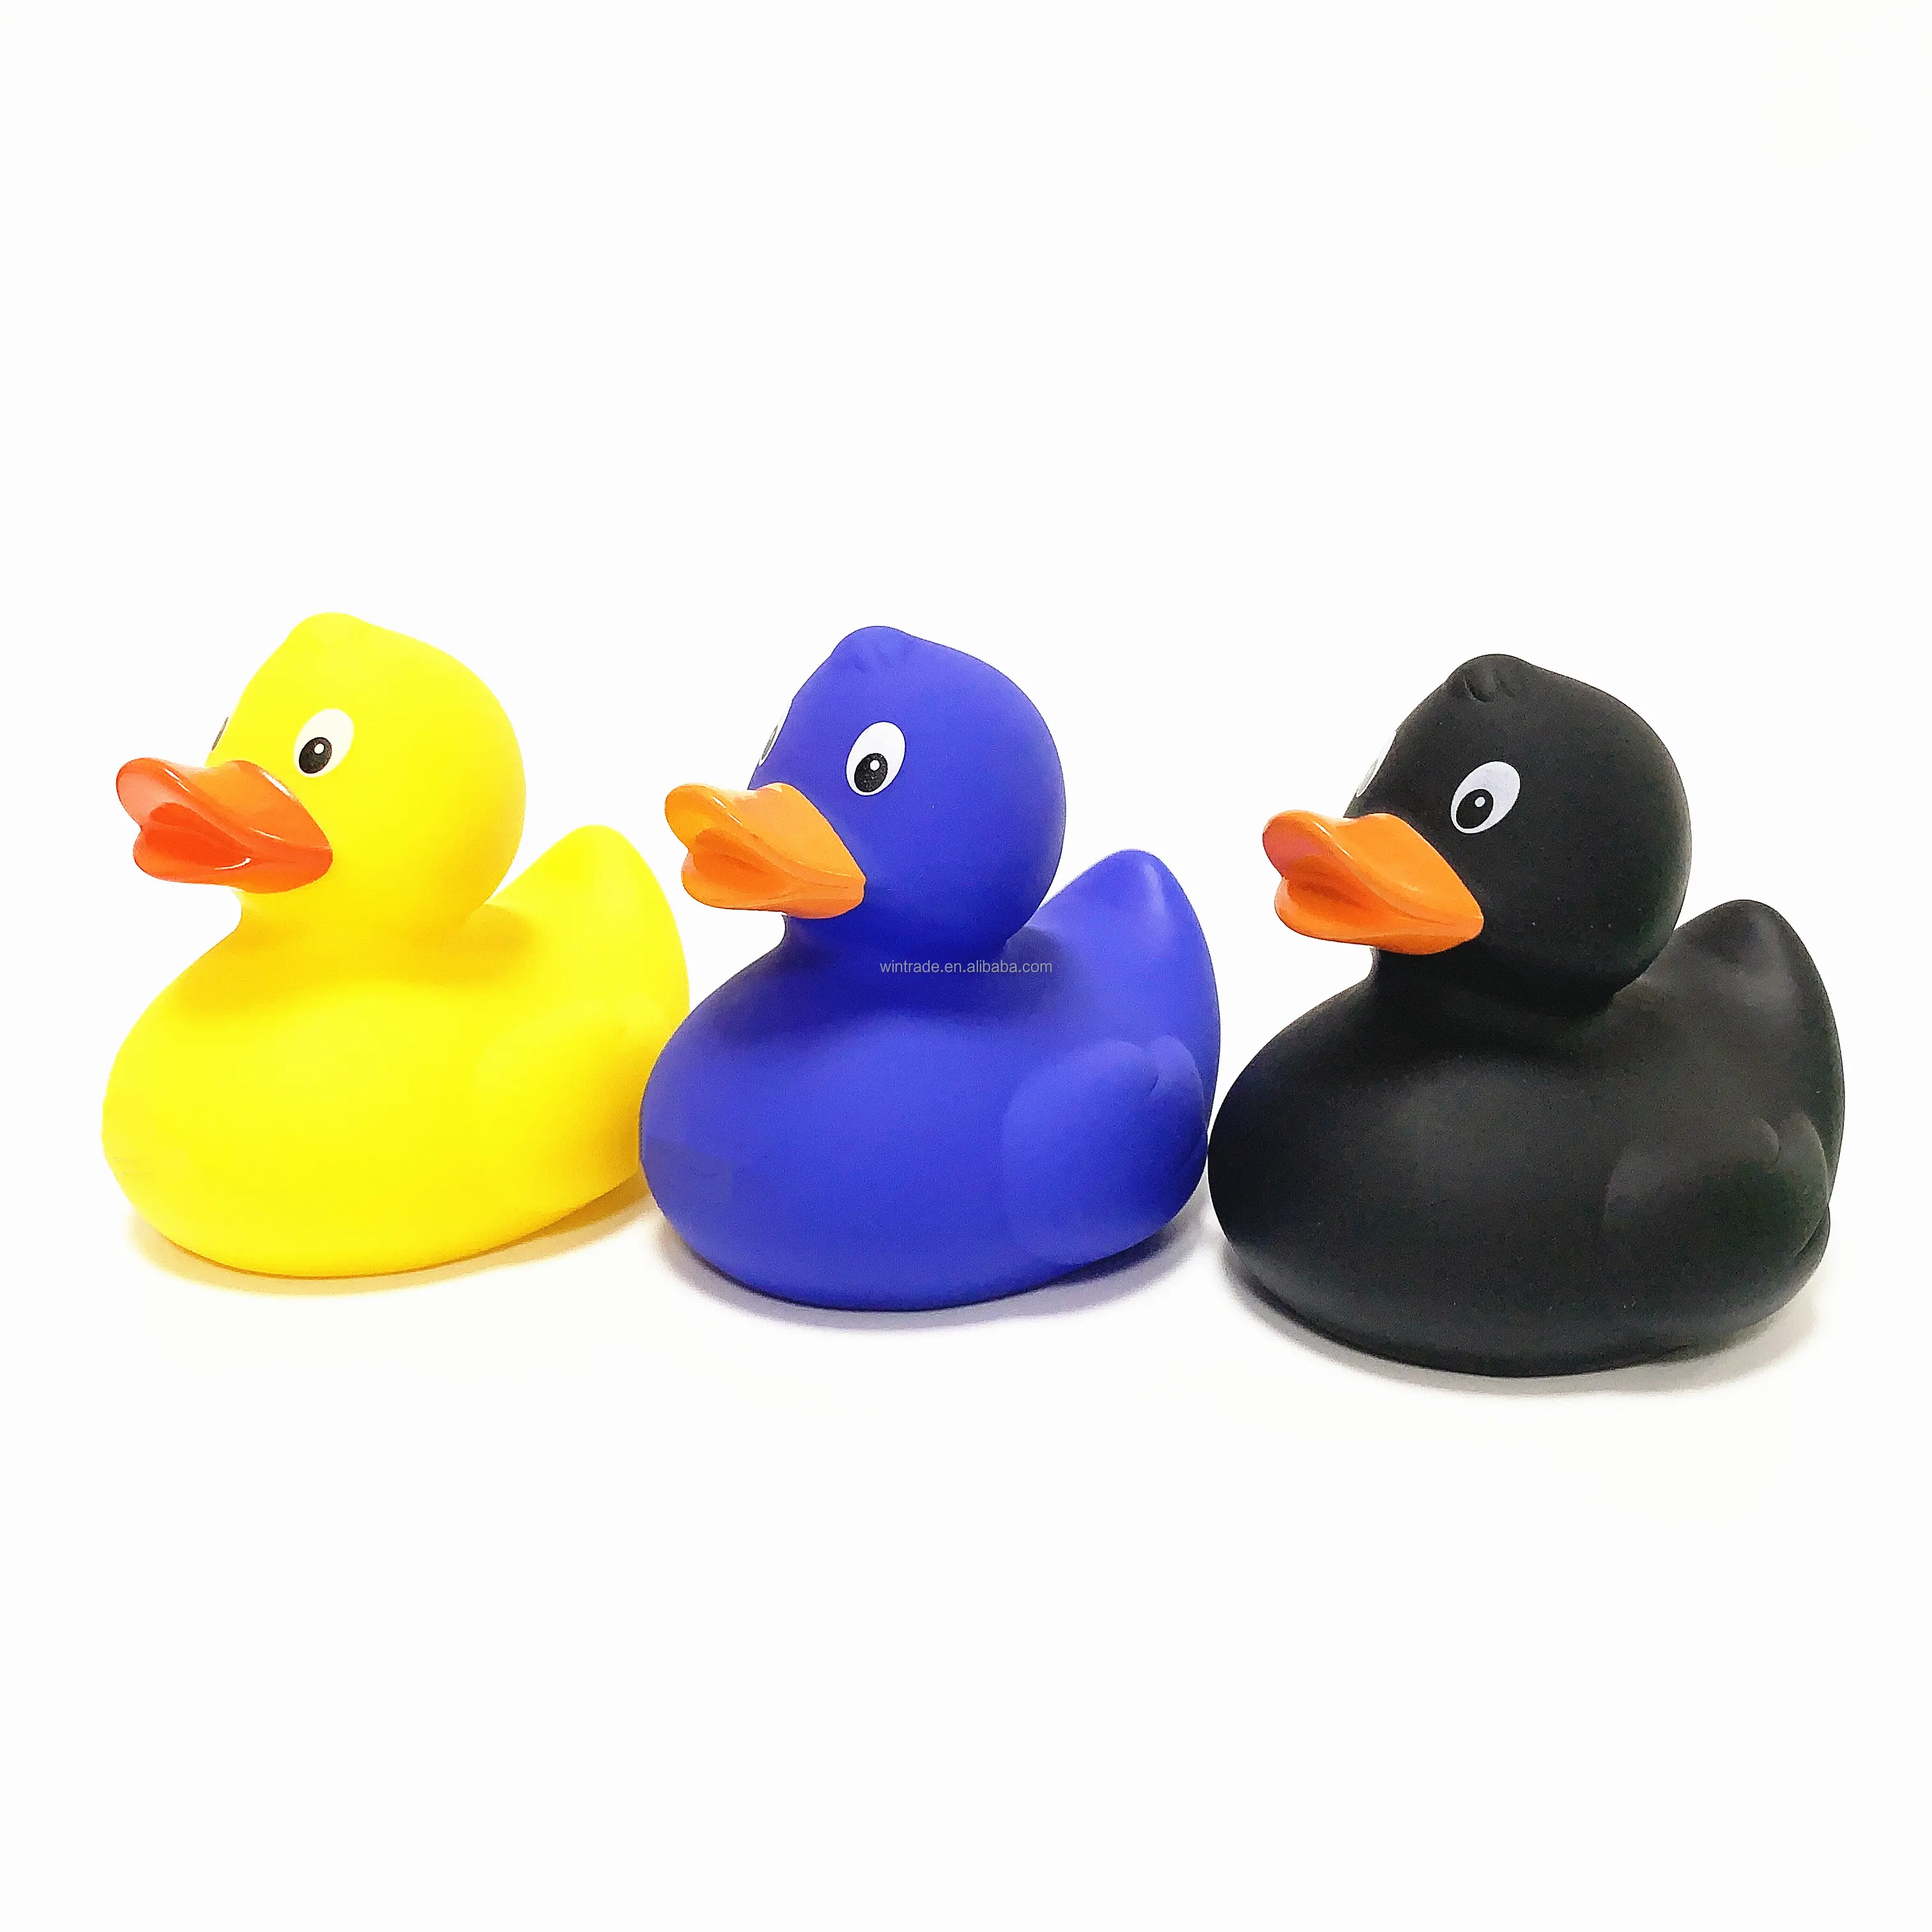 Promosyon sıkmak için güzel banyo ördek markalı LOGO baskılı beyaz siyah ördek ile özel pembe plastik ördekler toptan